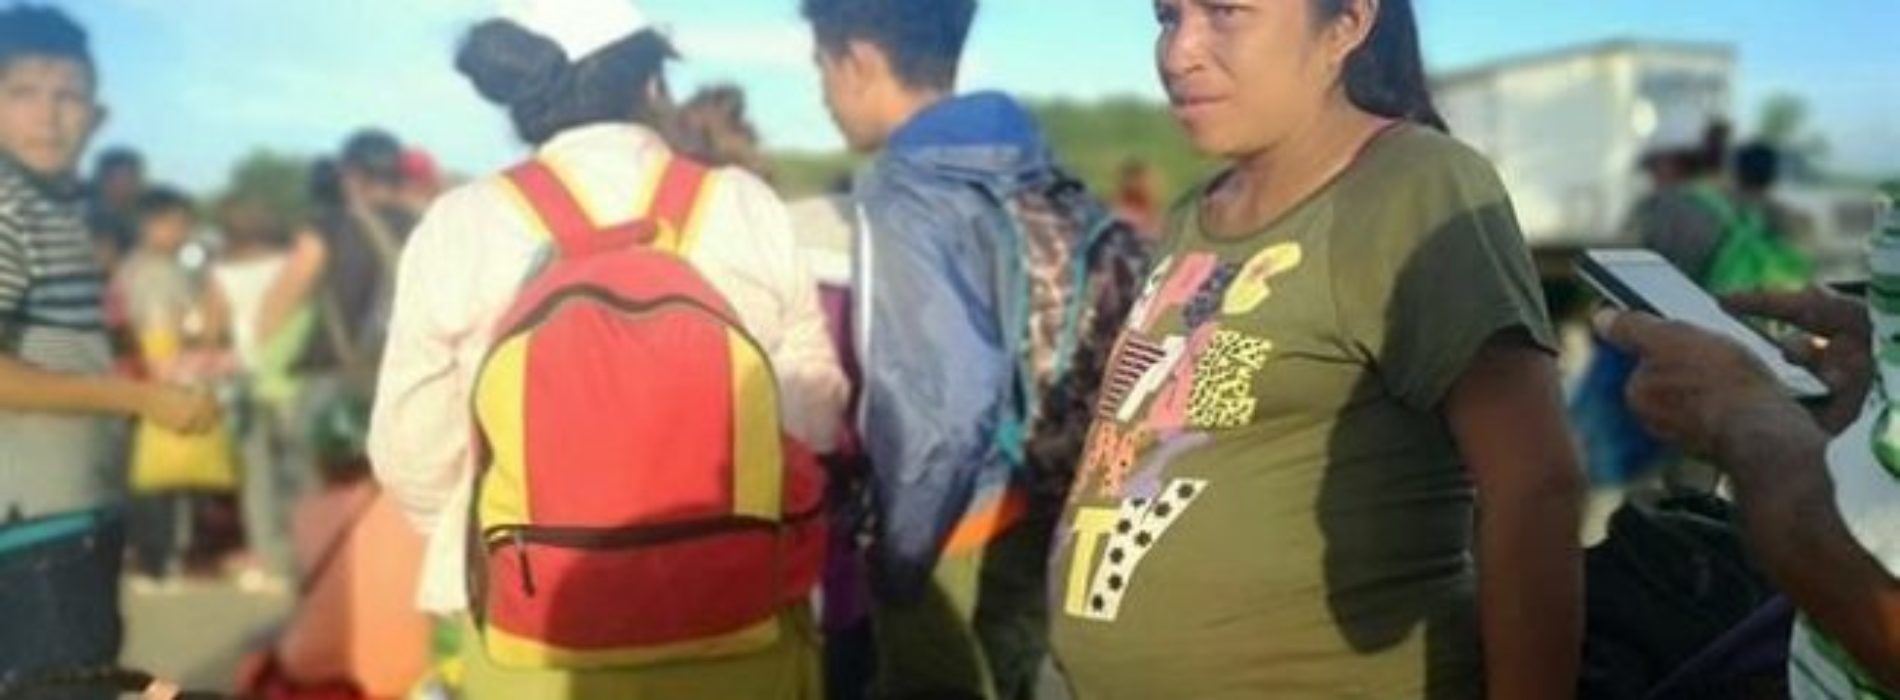 Registran a bebé de caravana migrante que nació en
Oaxaca